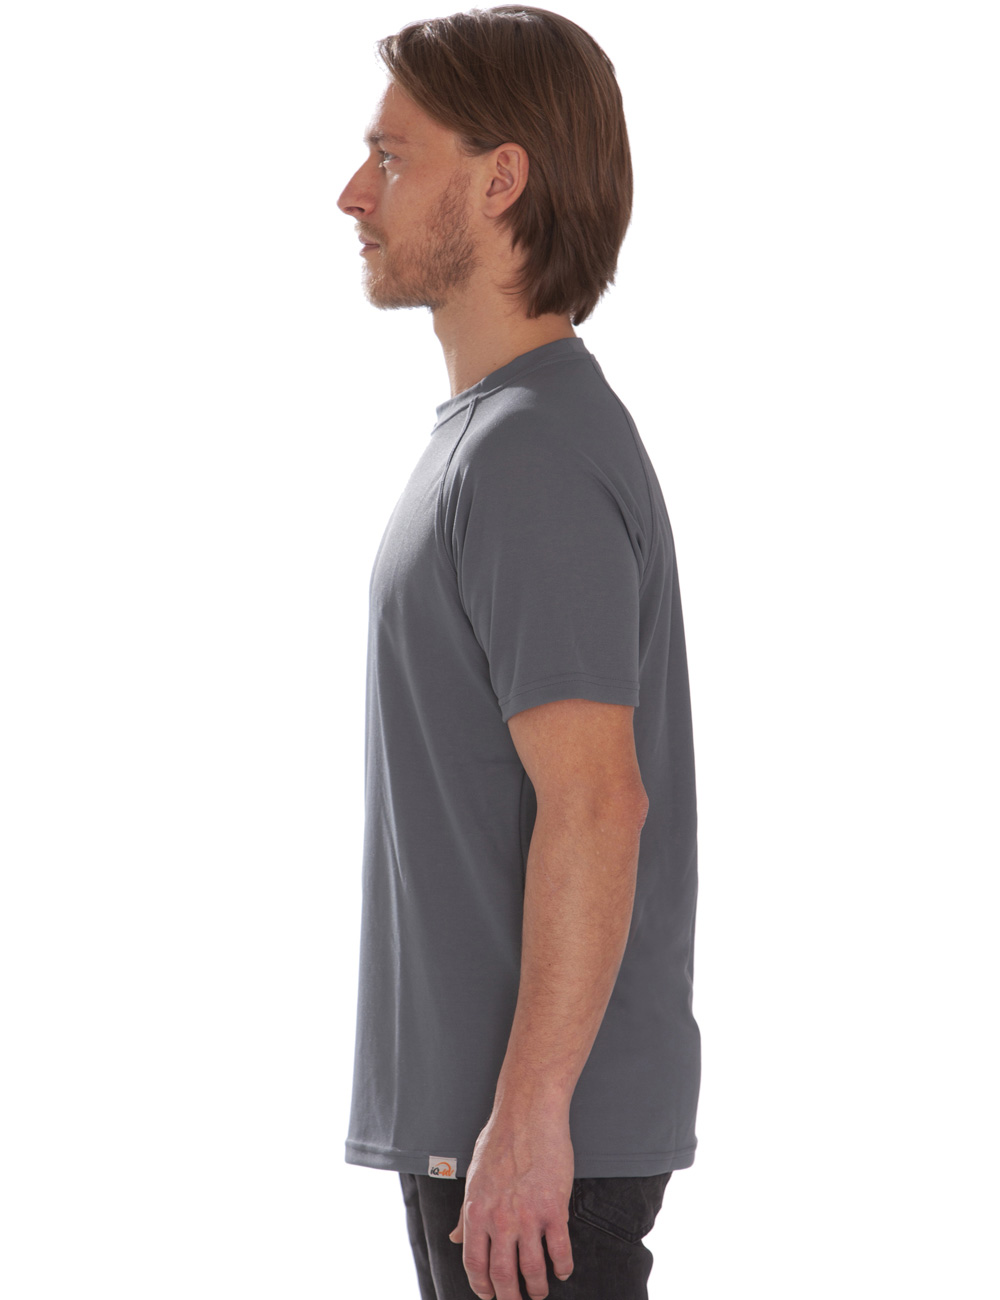 UV T-Shirt für Herren Outdoor Rundhals grau side